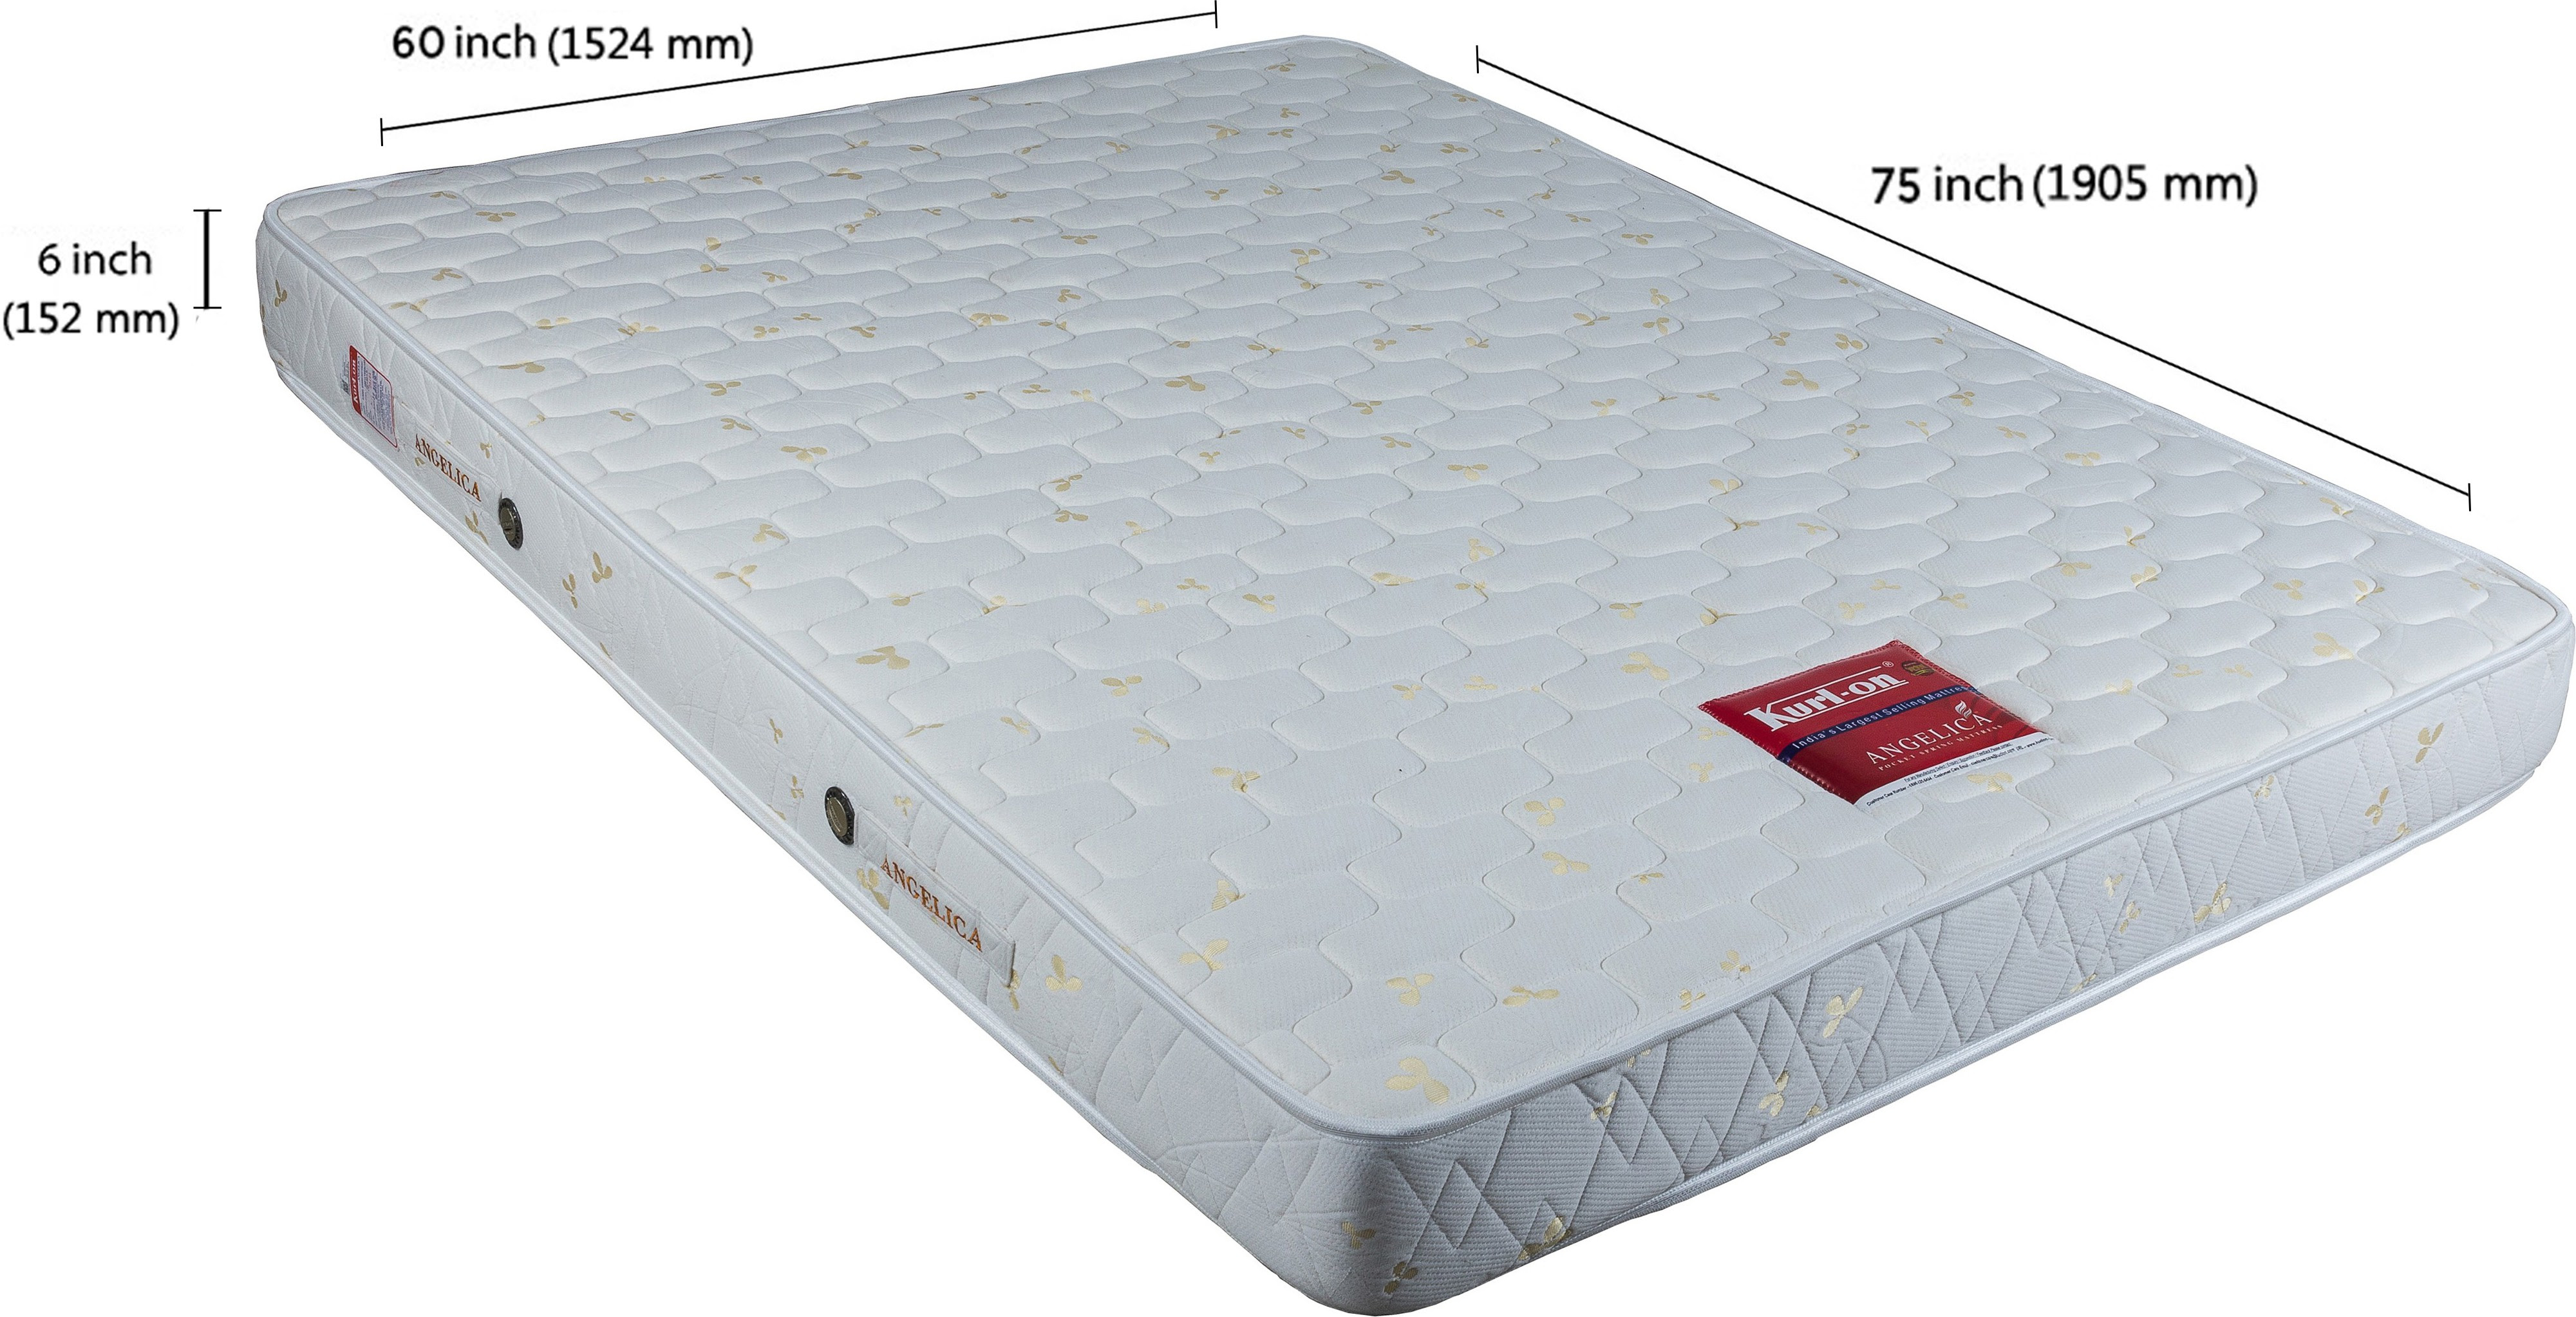 kurlon foam mattress online shopping